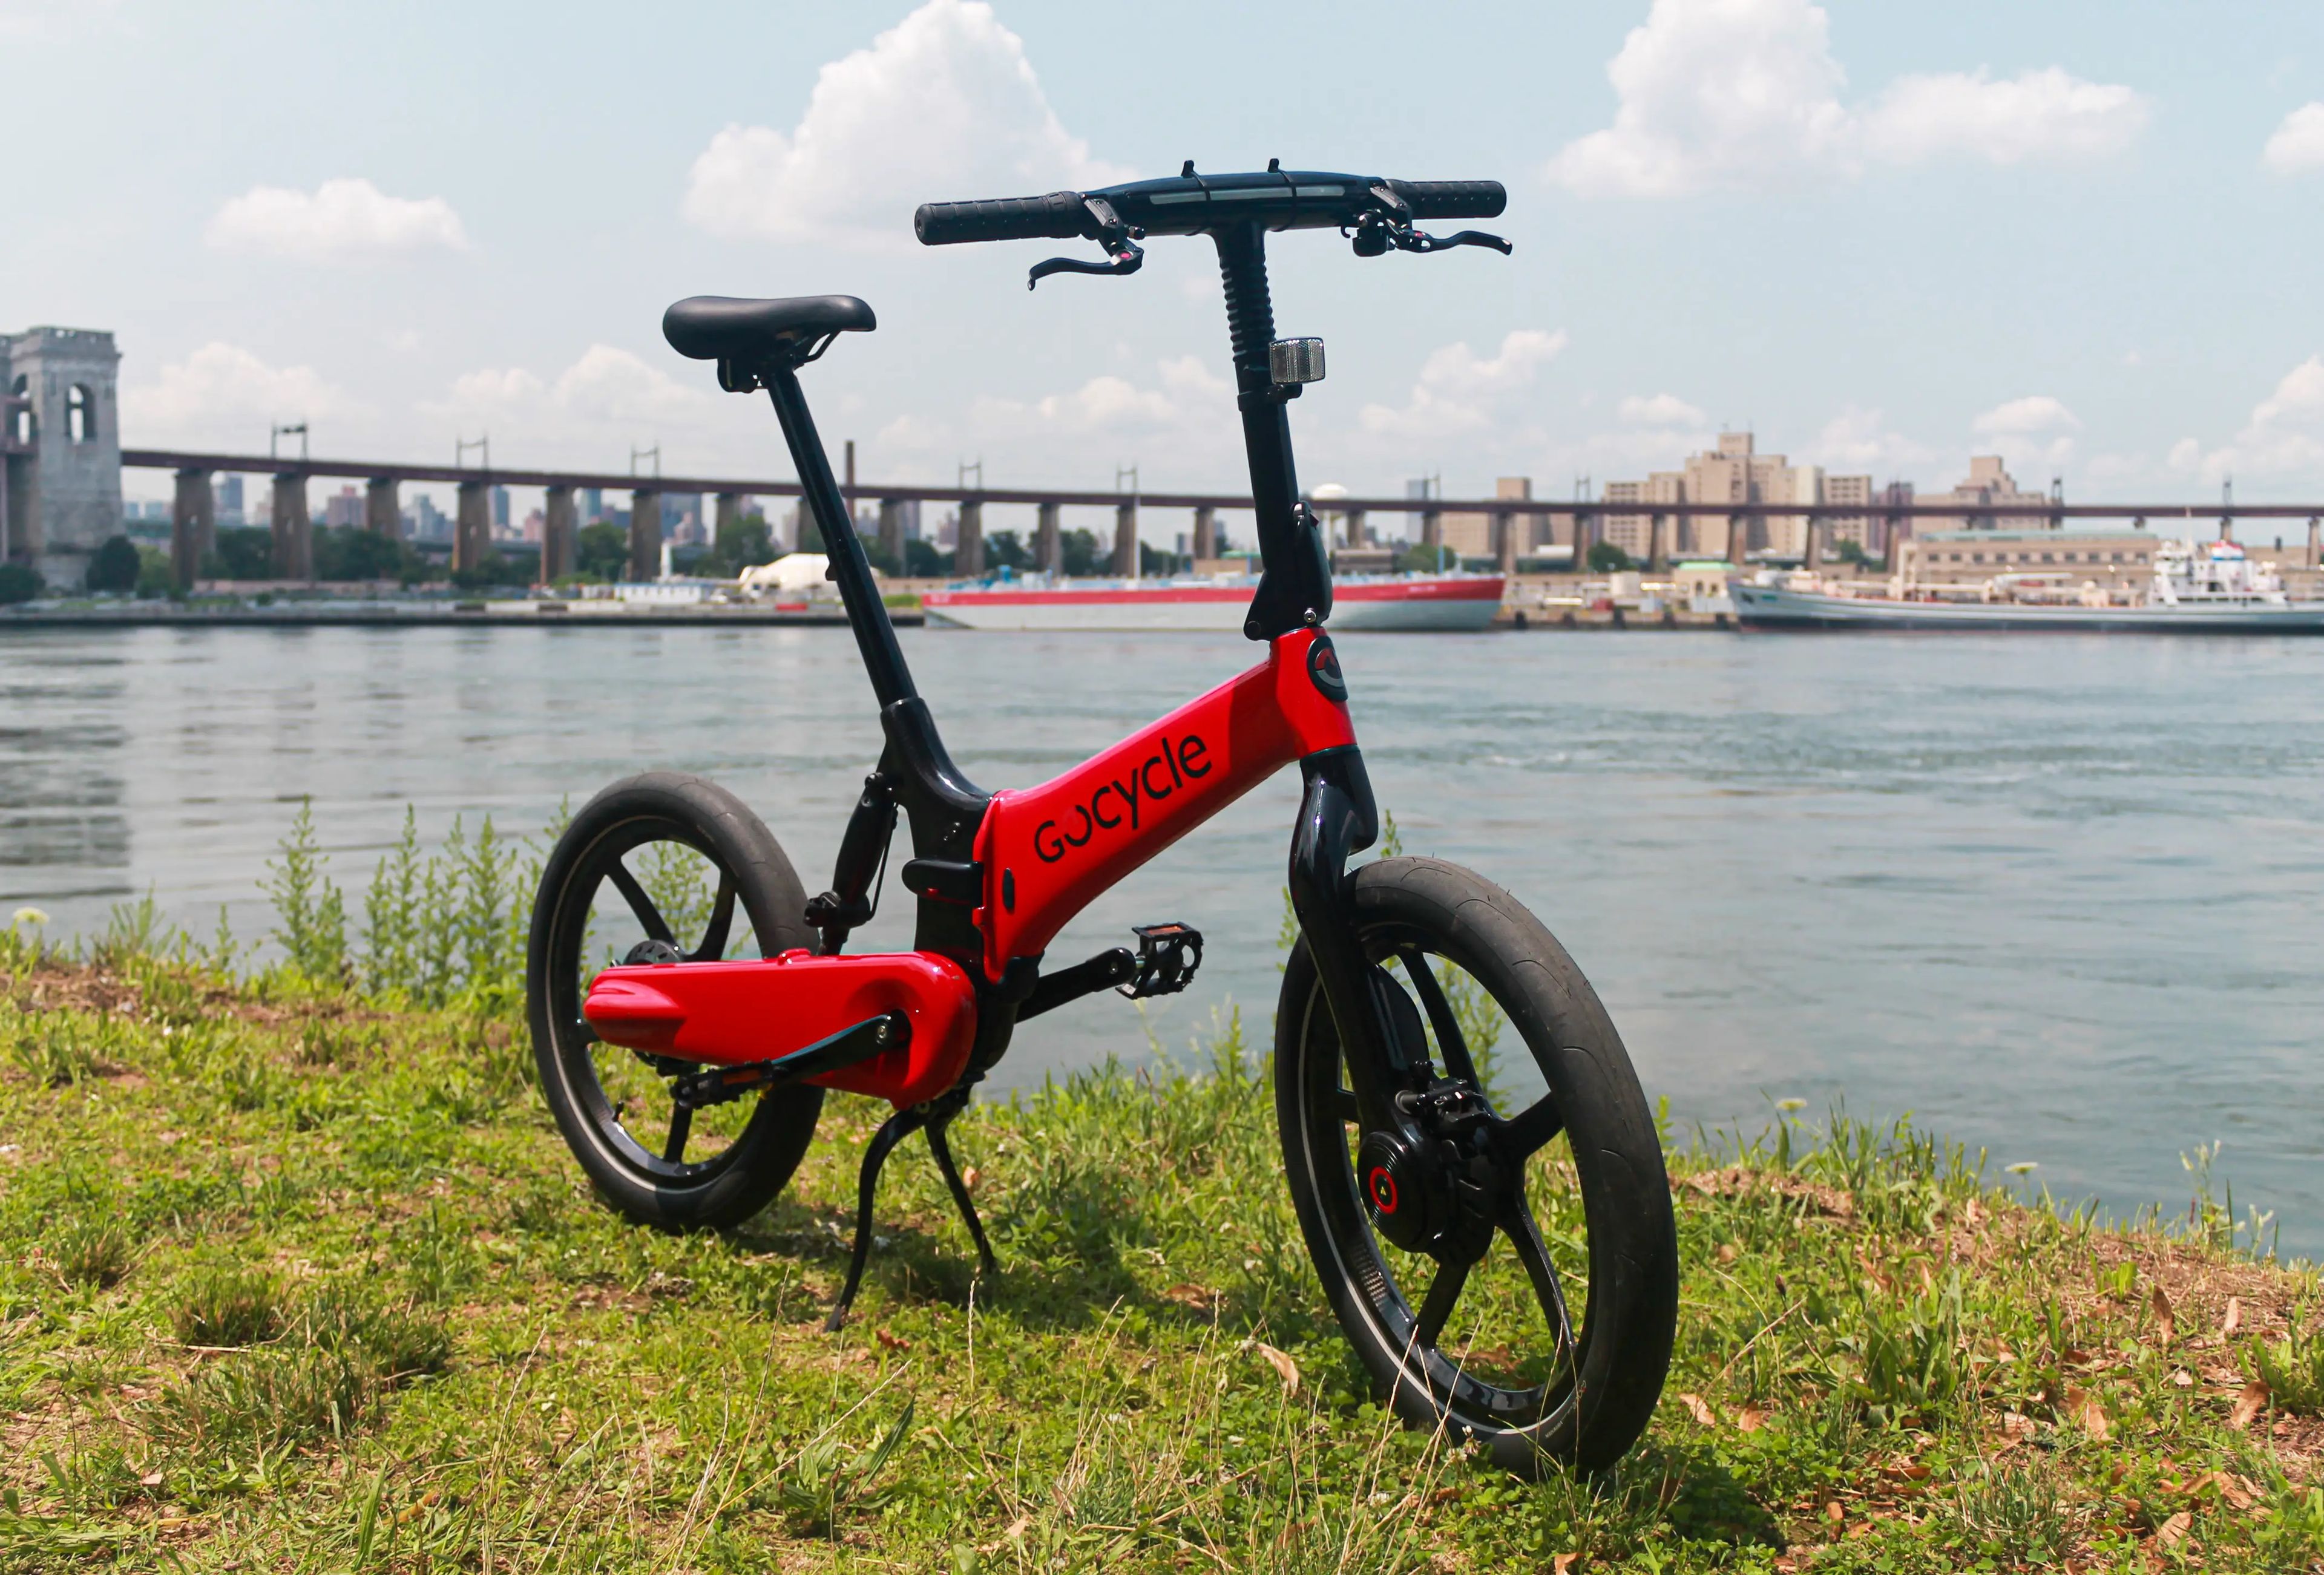 Gocycle lanza nueva y sofisticada bicicleta eléctrica plegable